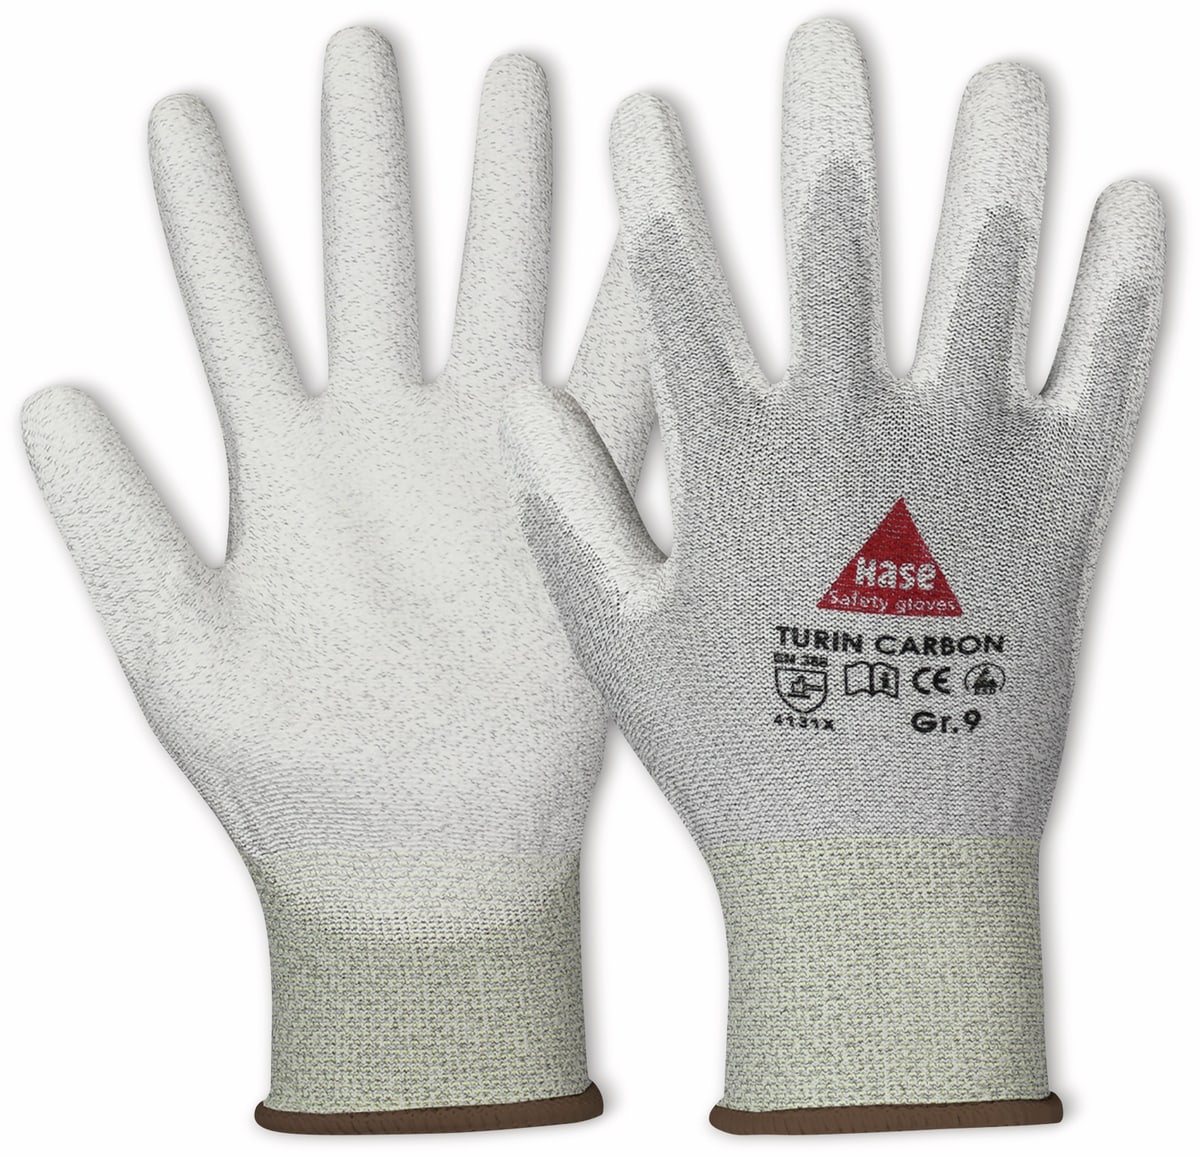 HASE SAFETY GLOVES Montagehandschuh, TURIN CARBON, EN 388, EN 420, antistatisch, Größe 6, grau/weiß von Hase Safety gloves